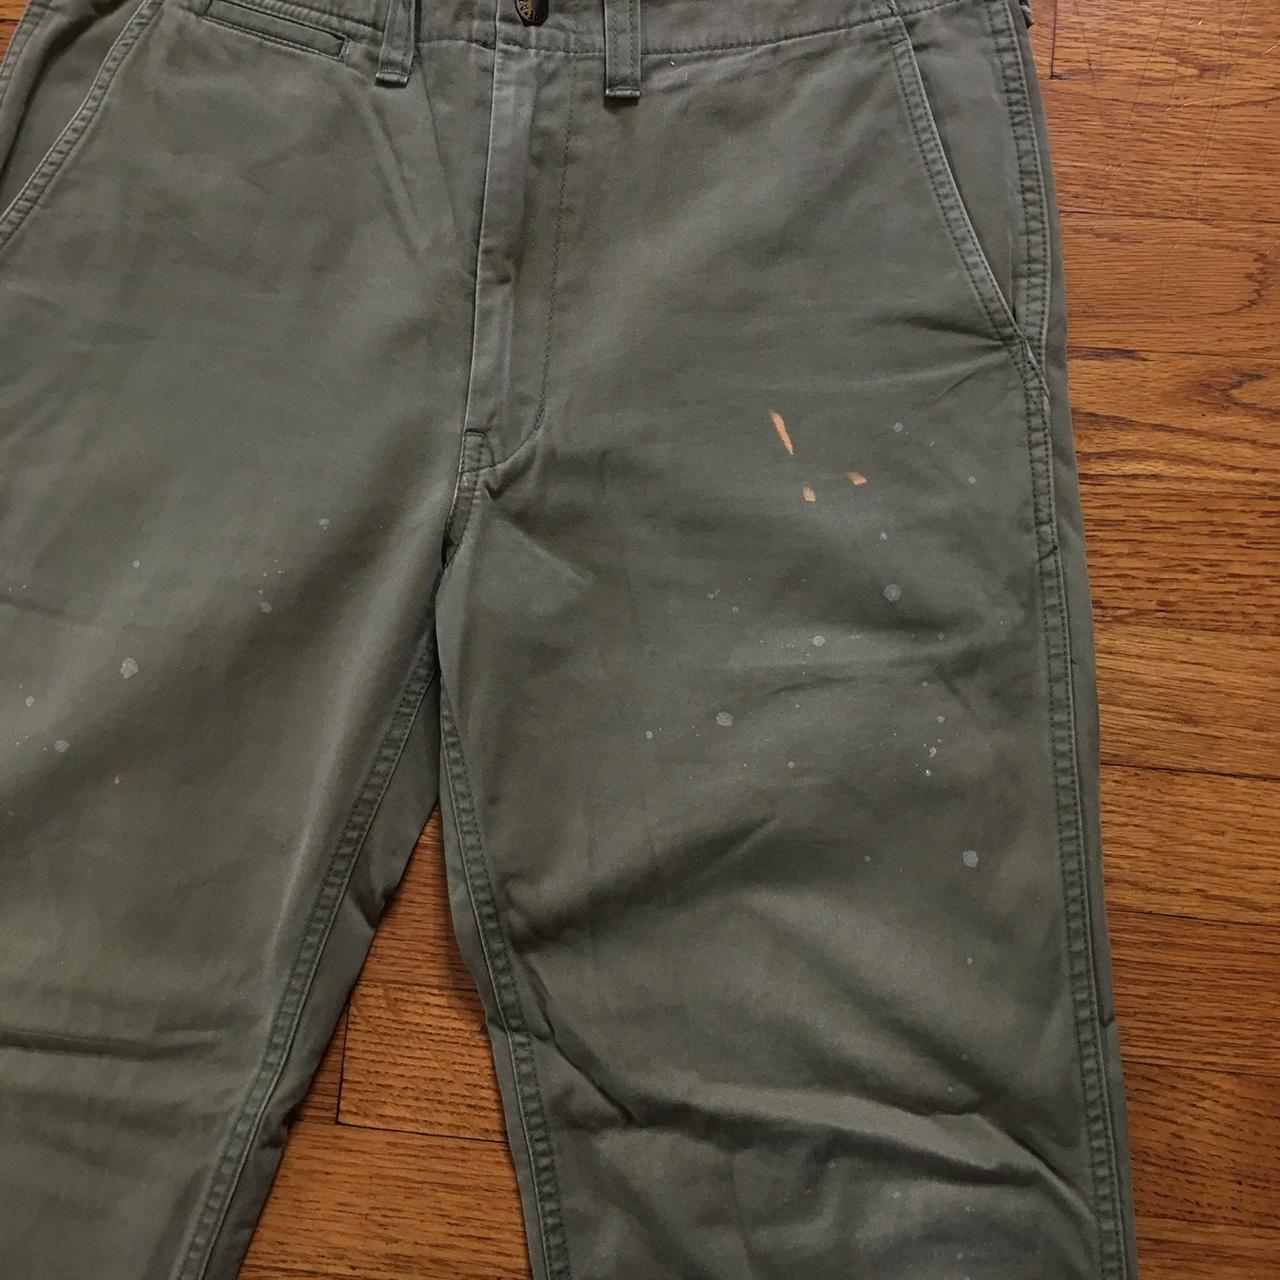 Bape Paint Splatter Chino Pants, Size small, Very rare...